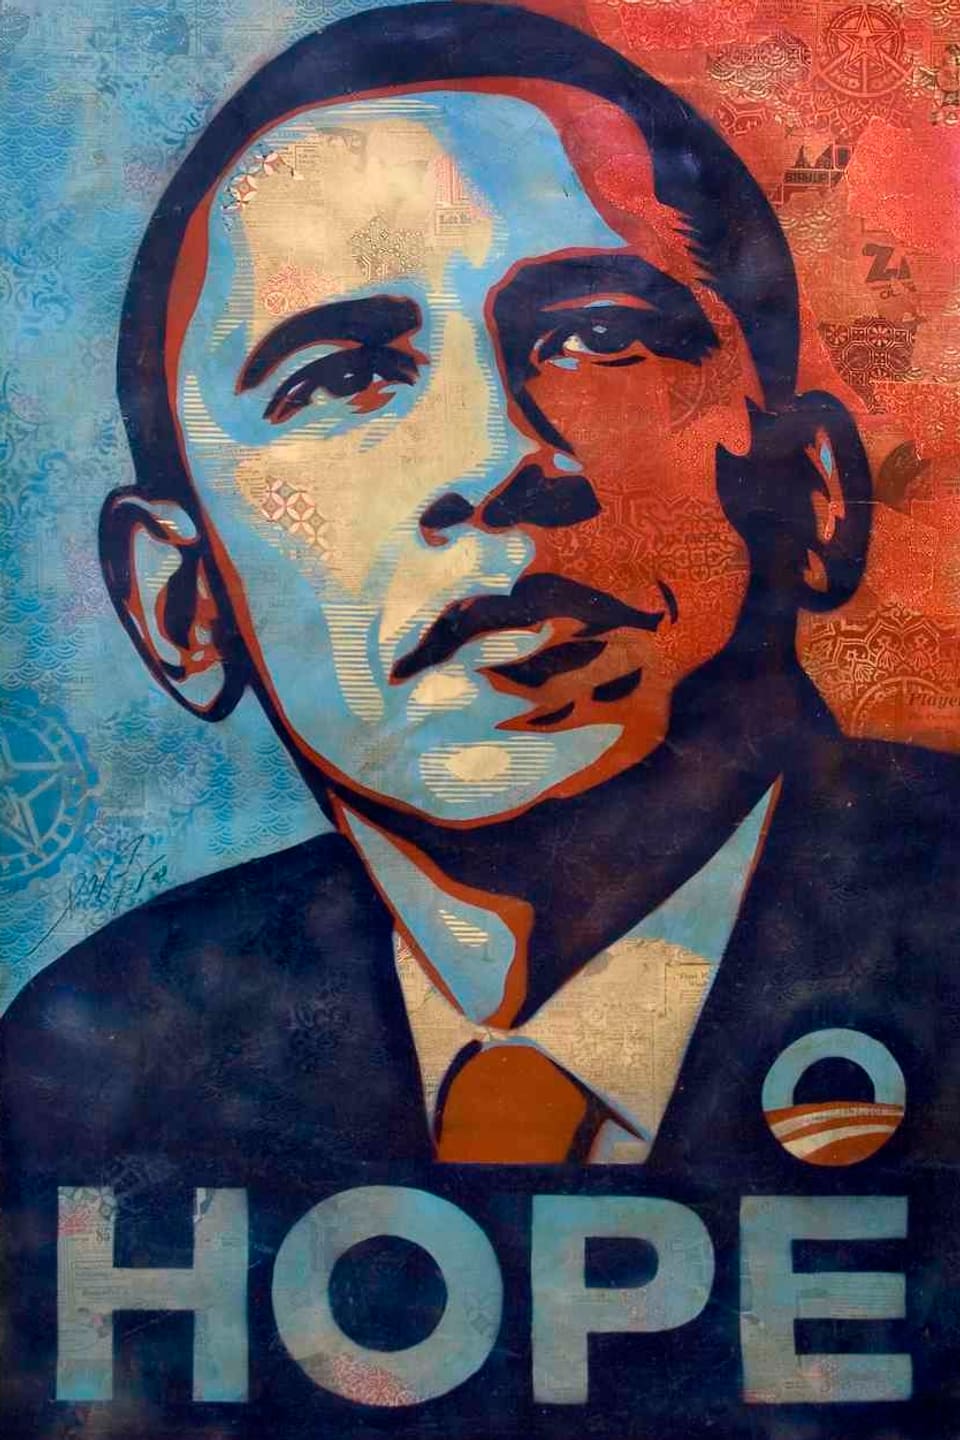 Bild von Barack Obama in Rot- und Blautönen. Darunter in Grossbuchstaben das Wort "HOPE".